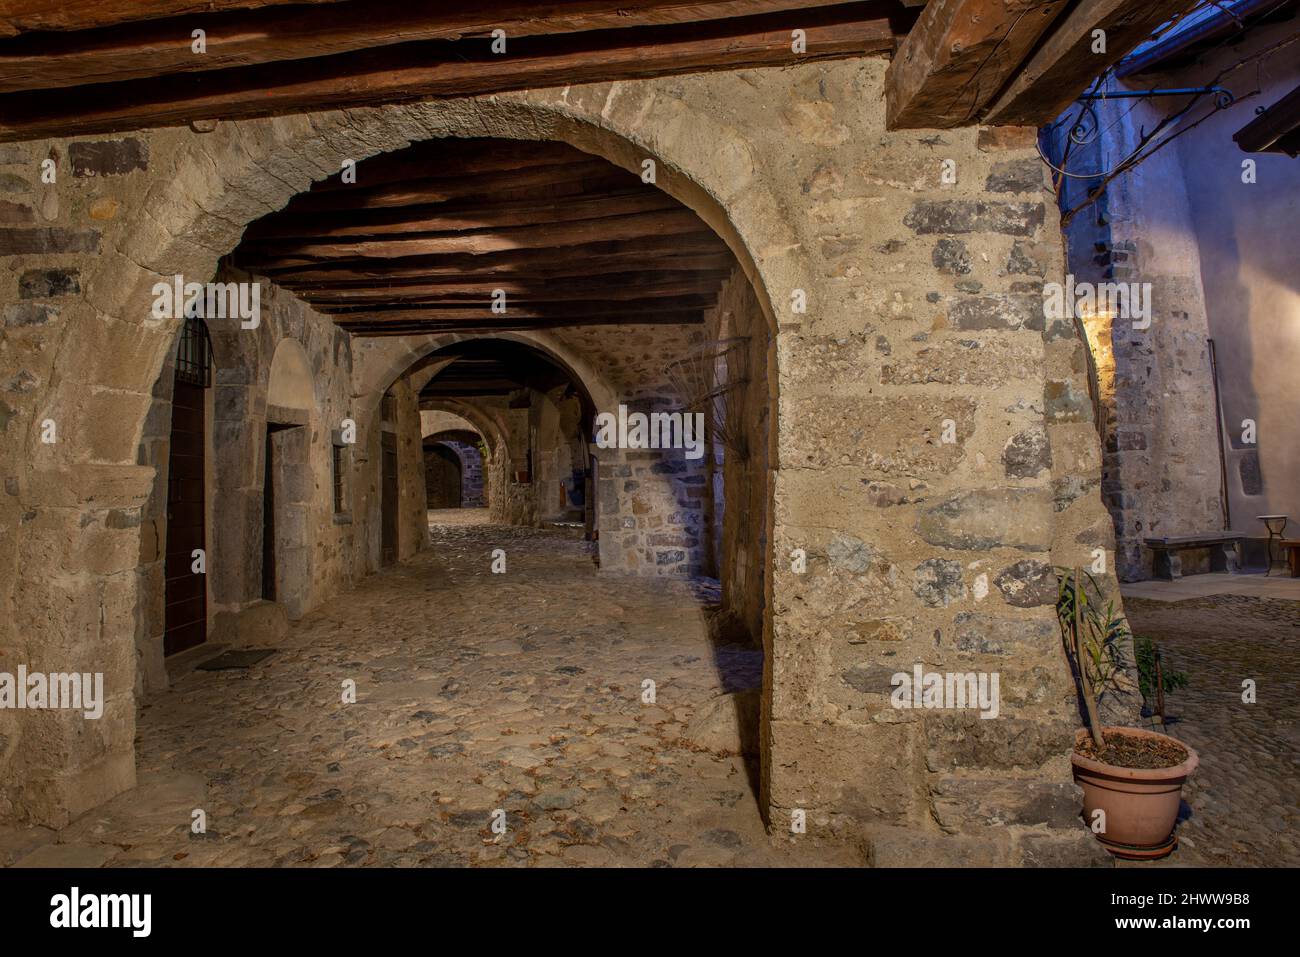 Camerata cornello del Tasso Medieval village in Lombardy Stock Photo